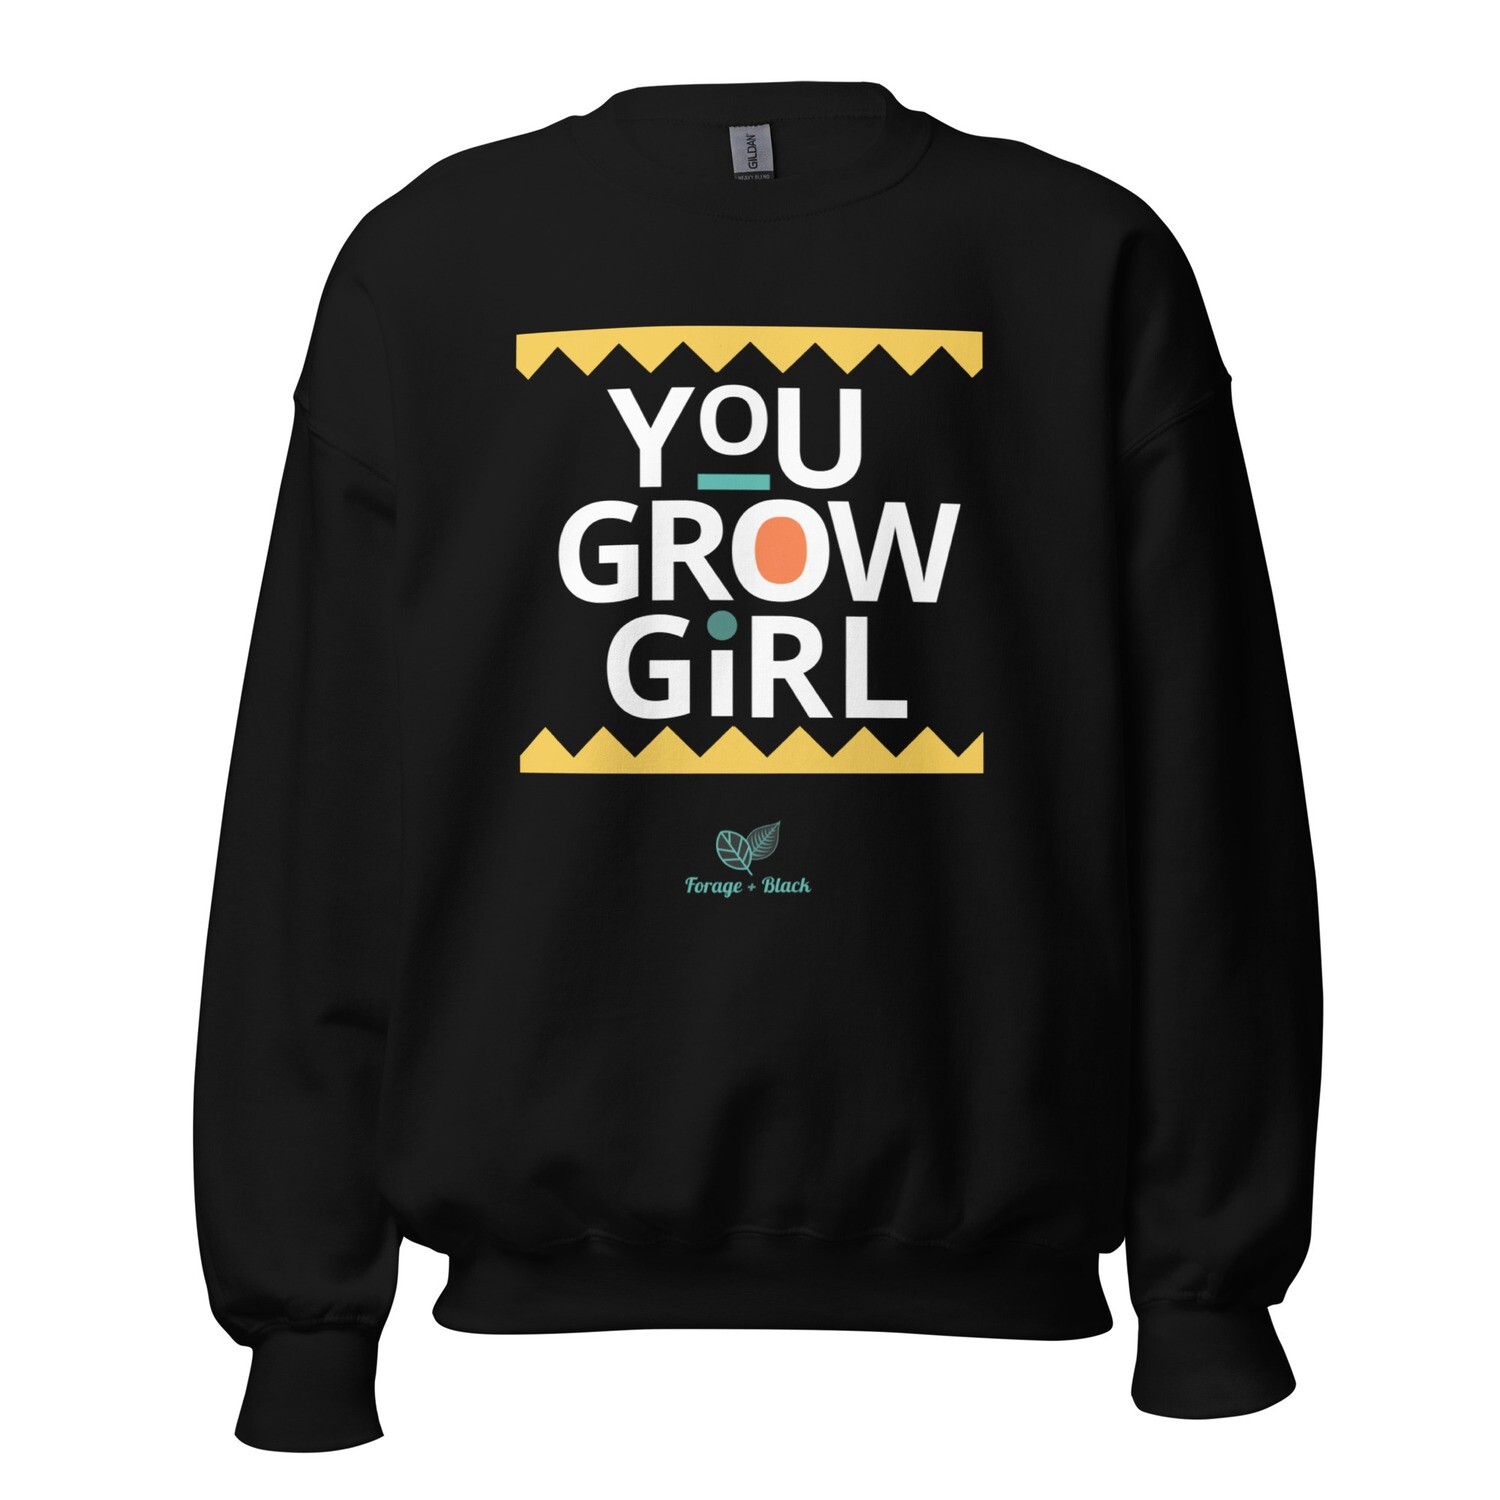 You Grow Girl! Unisex Sweatshirt